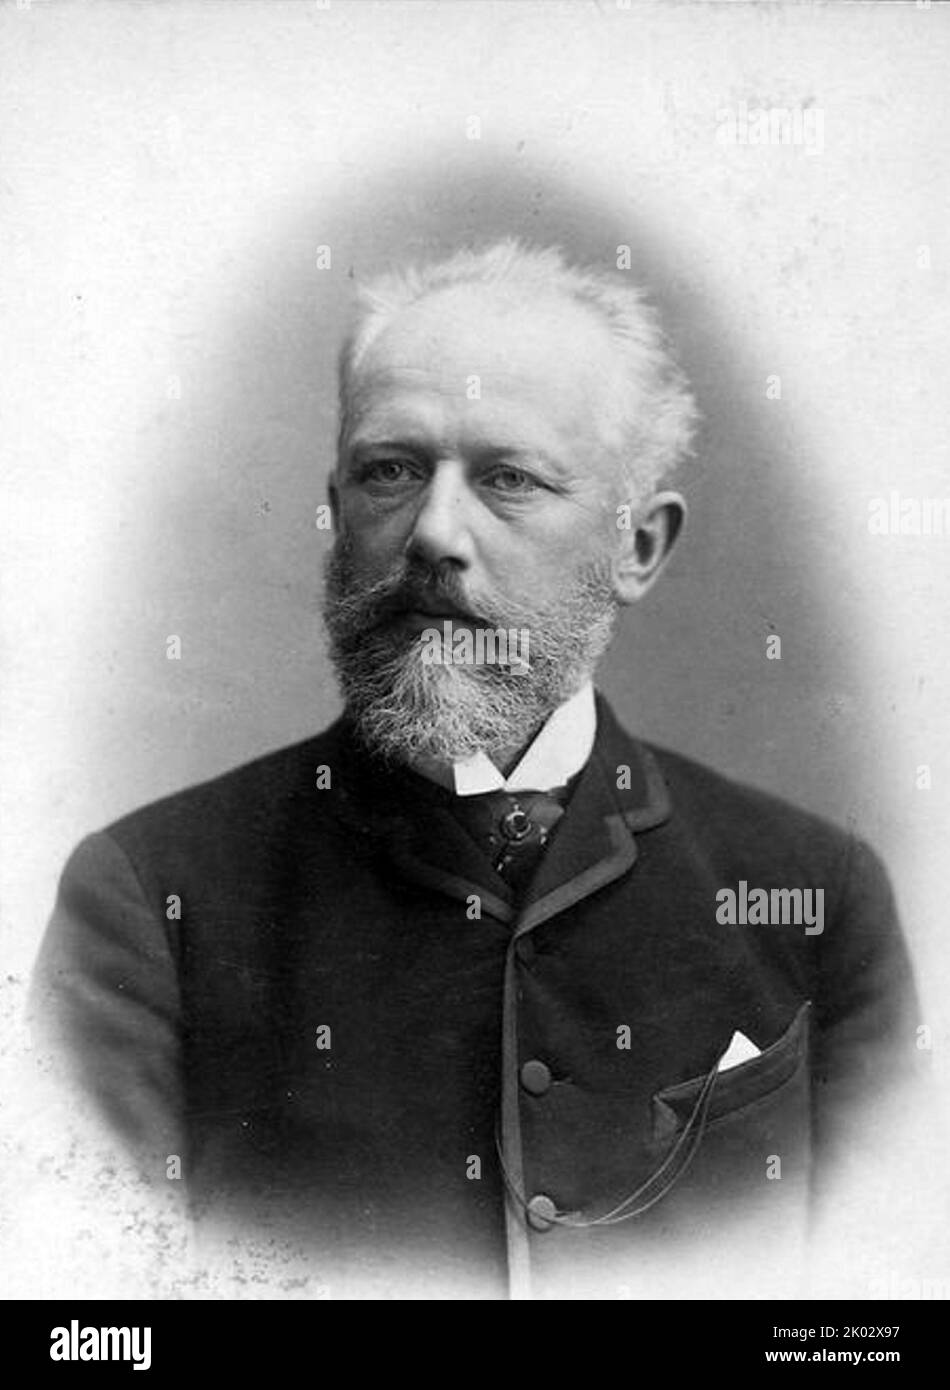 Pyotr Ilyich Tchaikovsky (1840 - 1893) compositeur russe de la période romantique. Banque D'Images